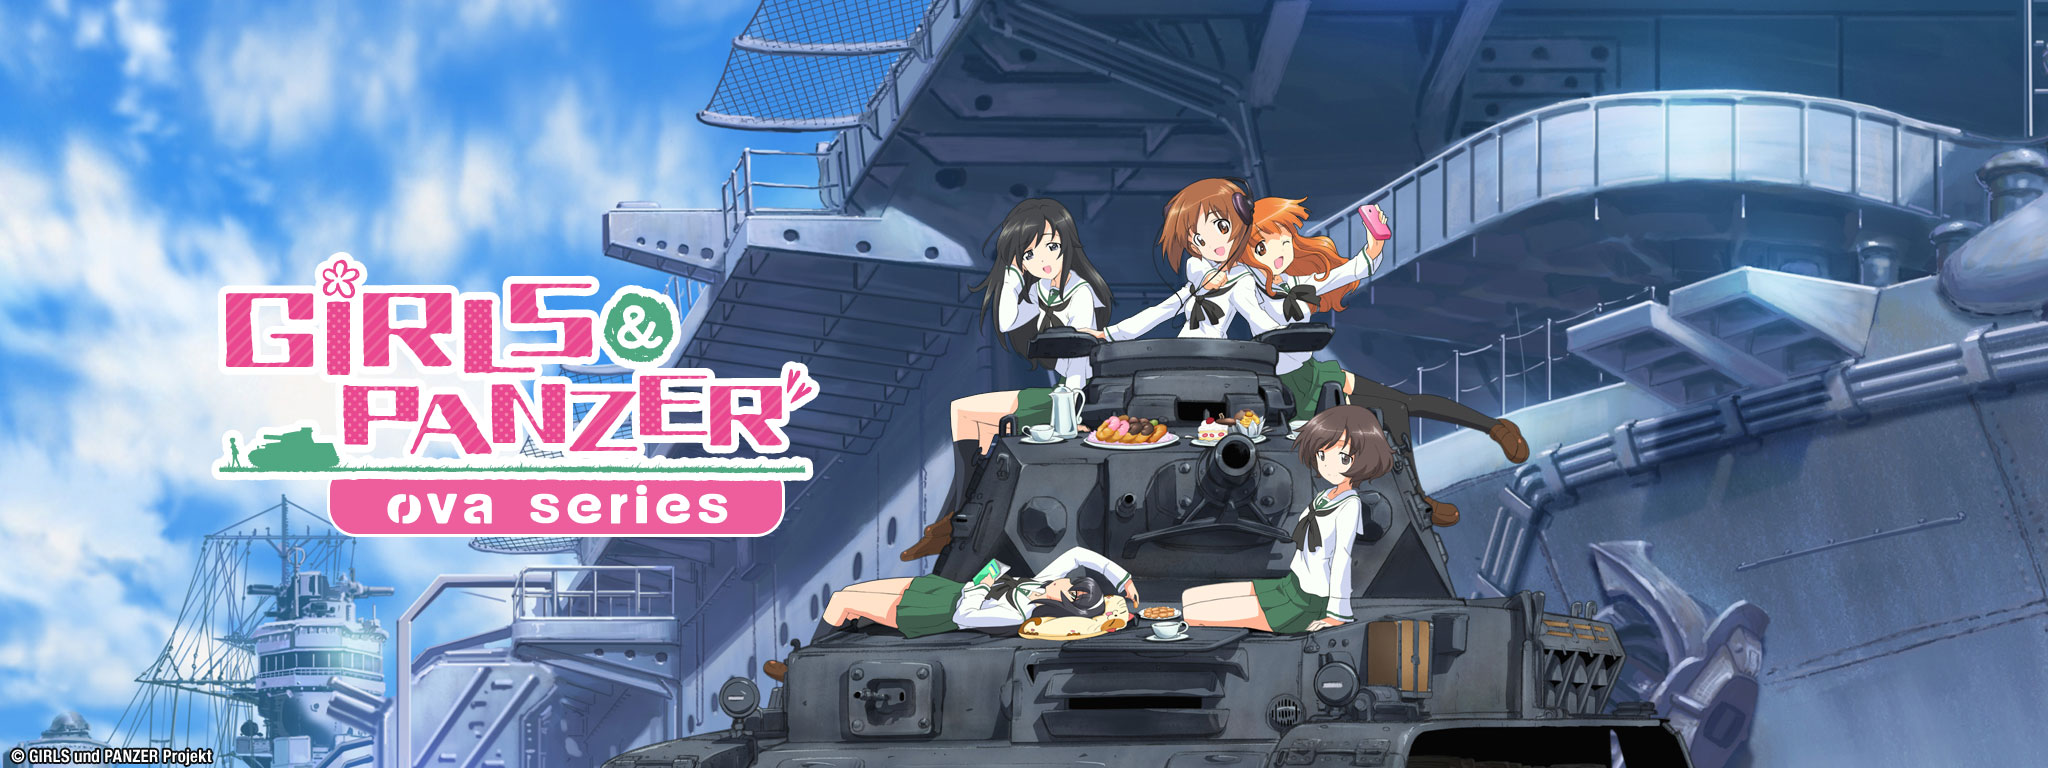 Title Art for Girls und Panzer OVA